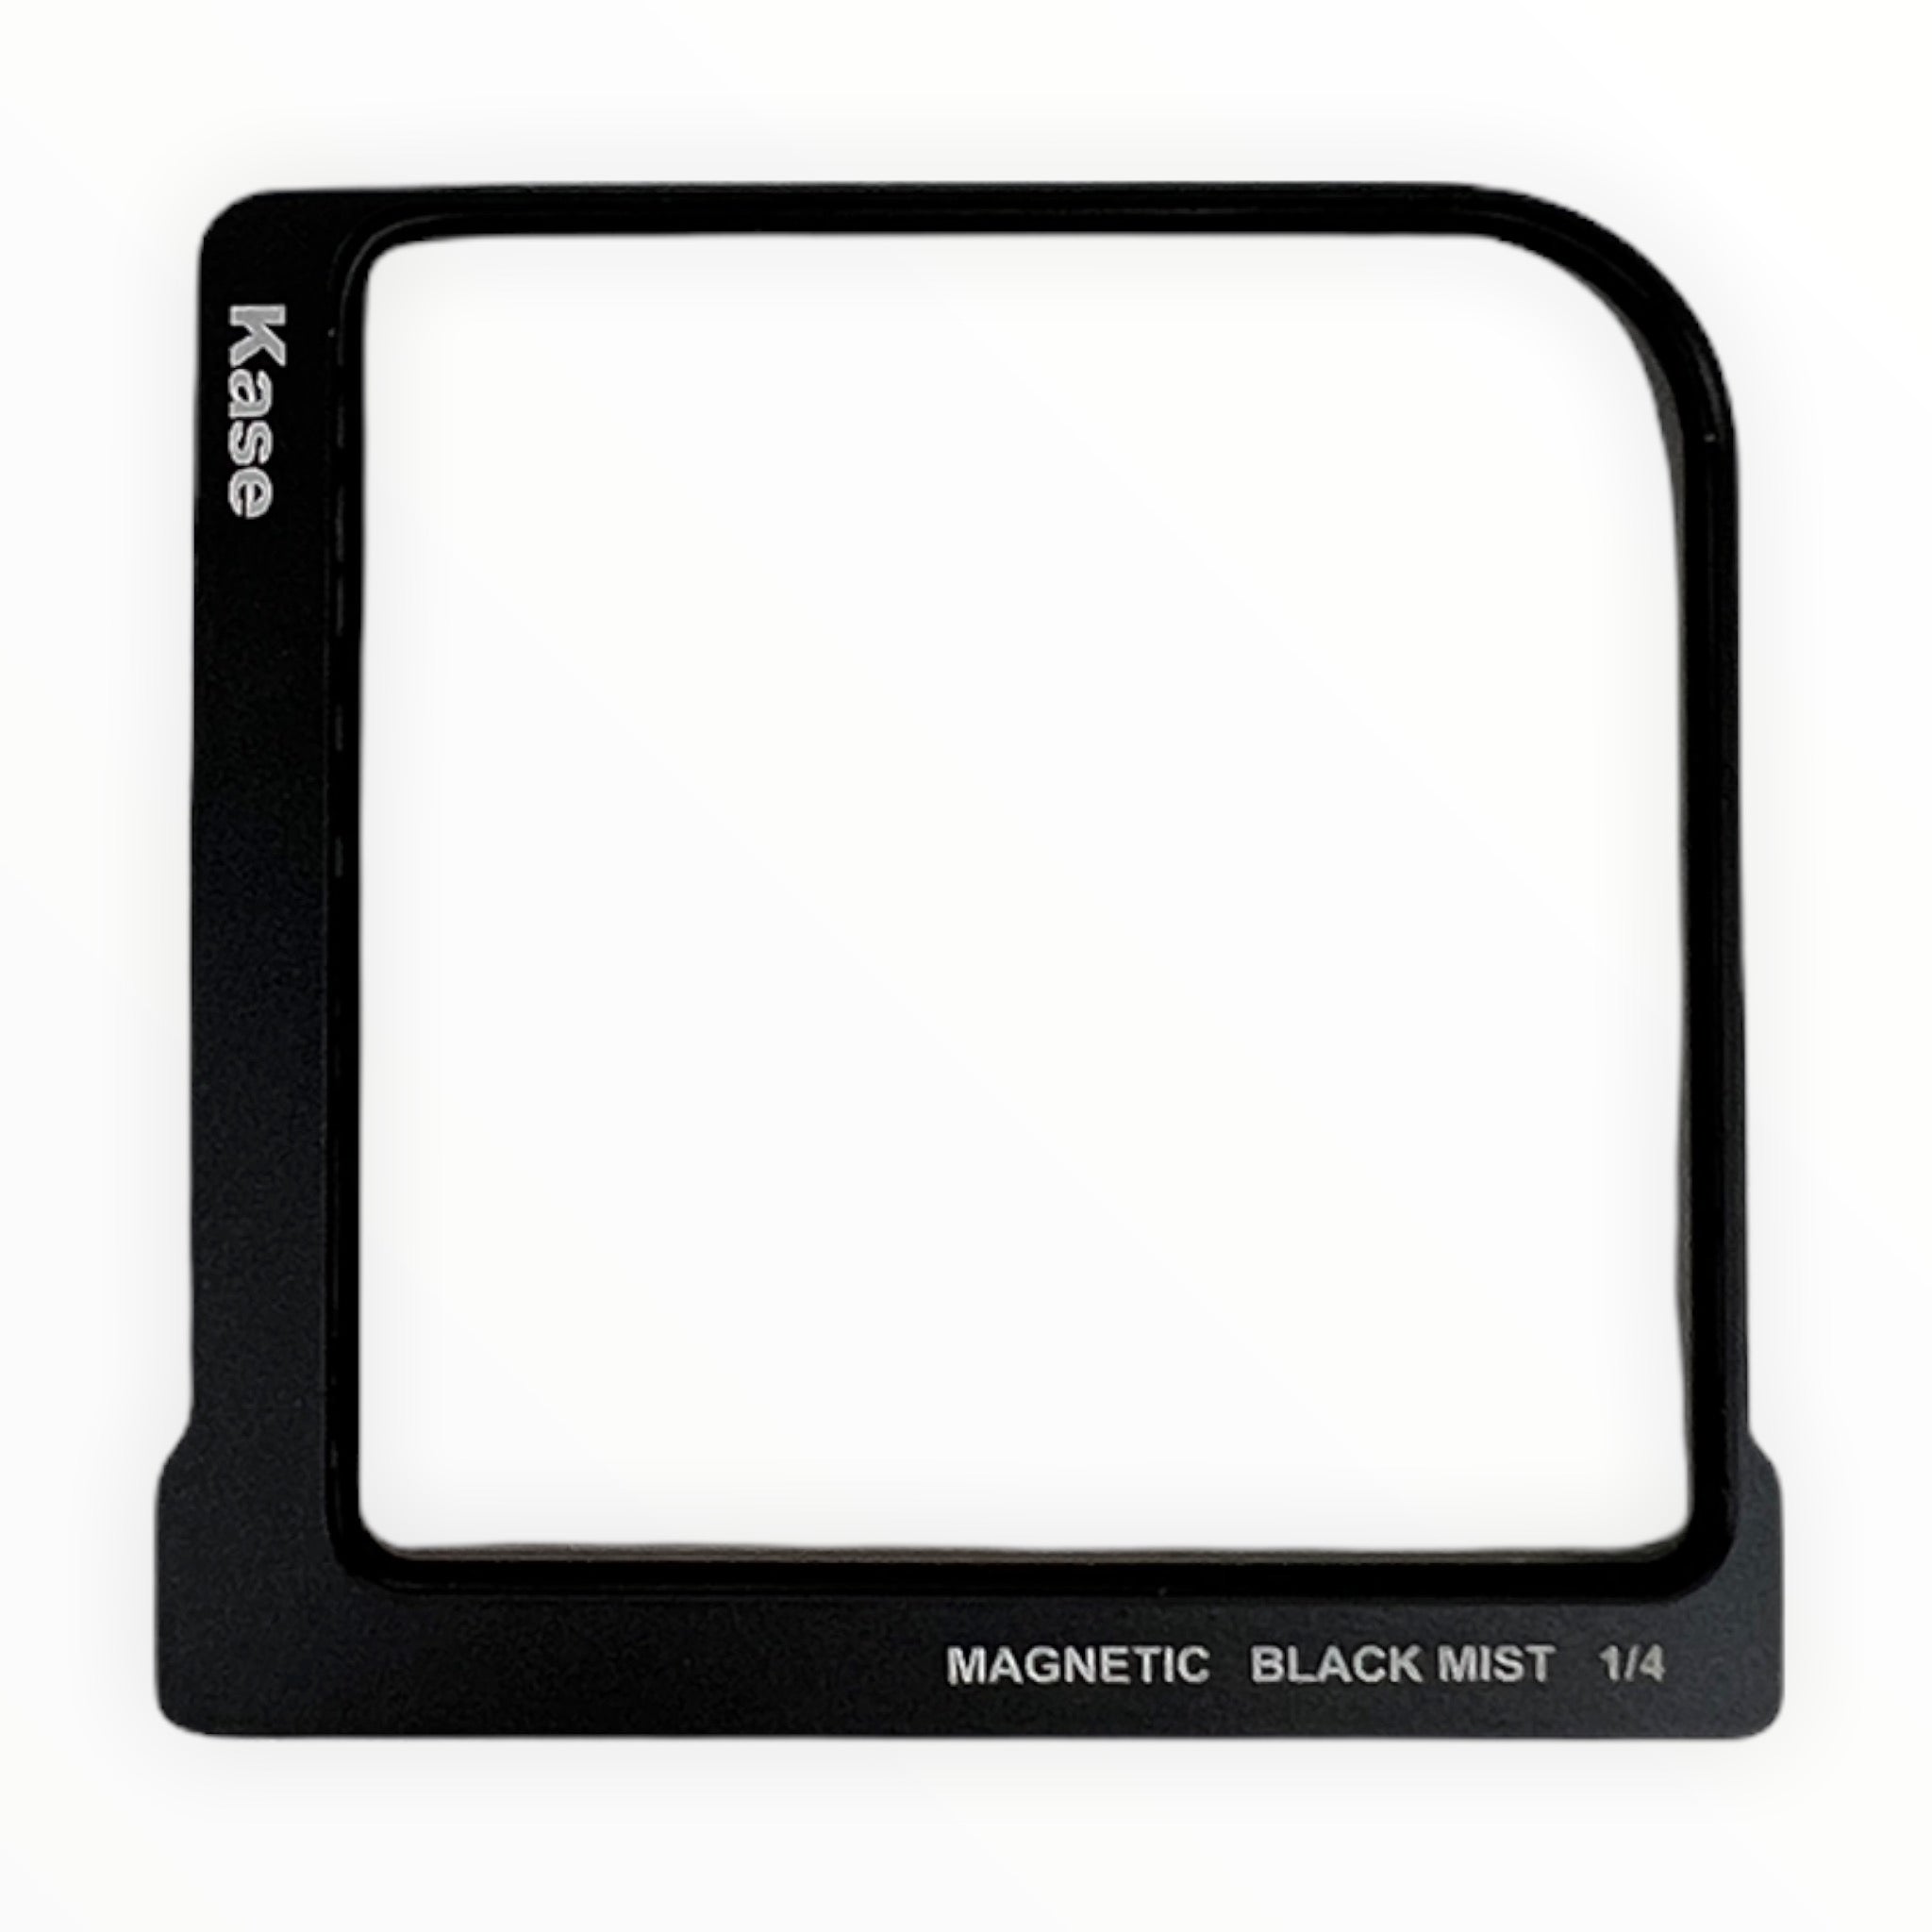 Kase Square Magnetic Filter Kit - Black Mist 1/4 Filter